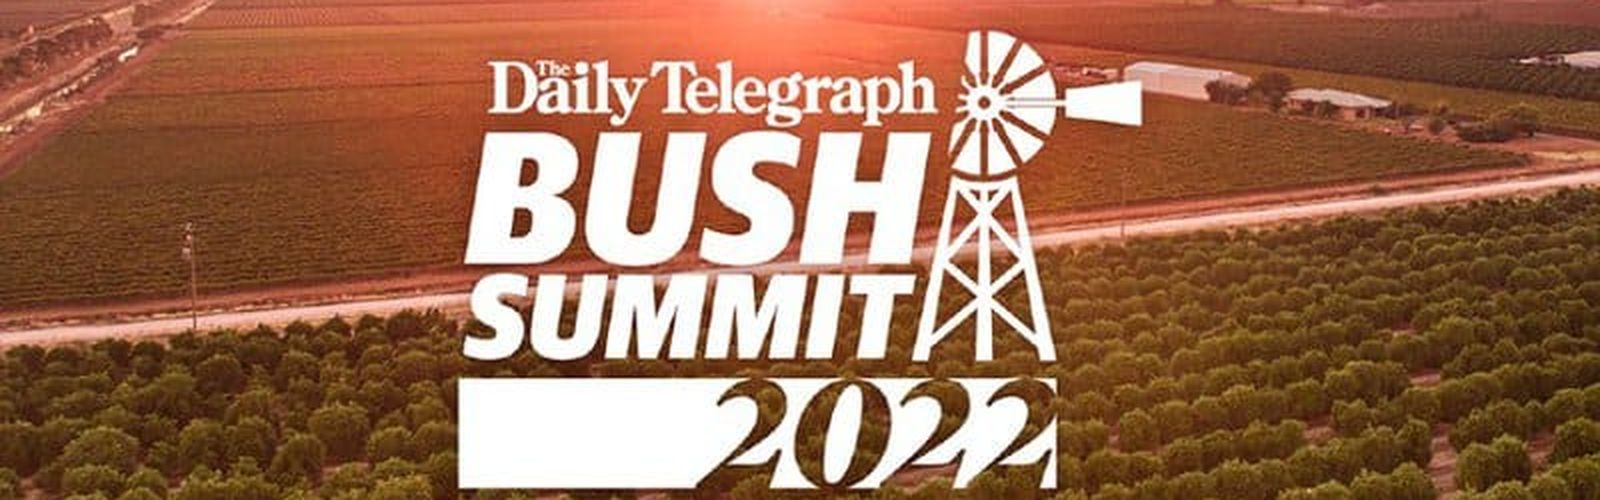 Bush Summit 2022 